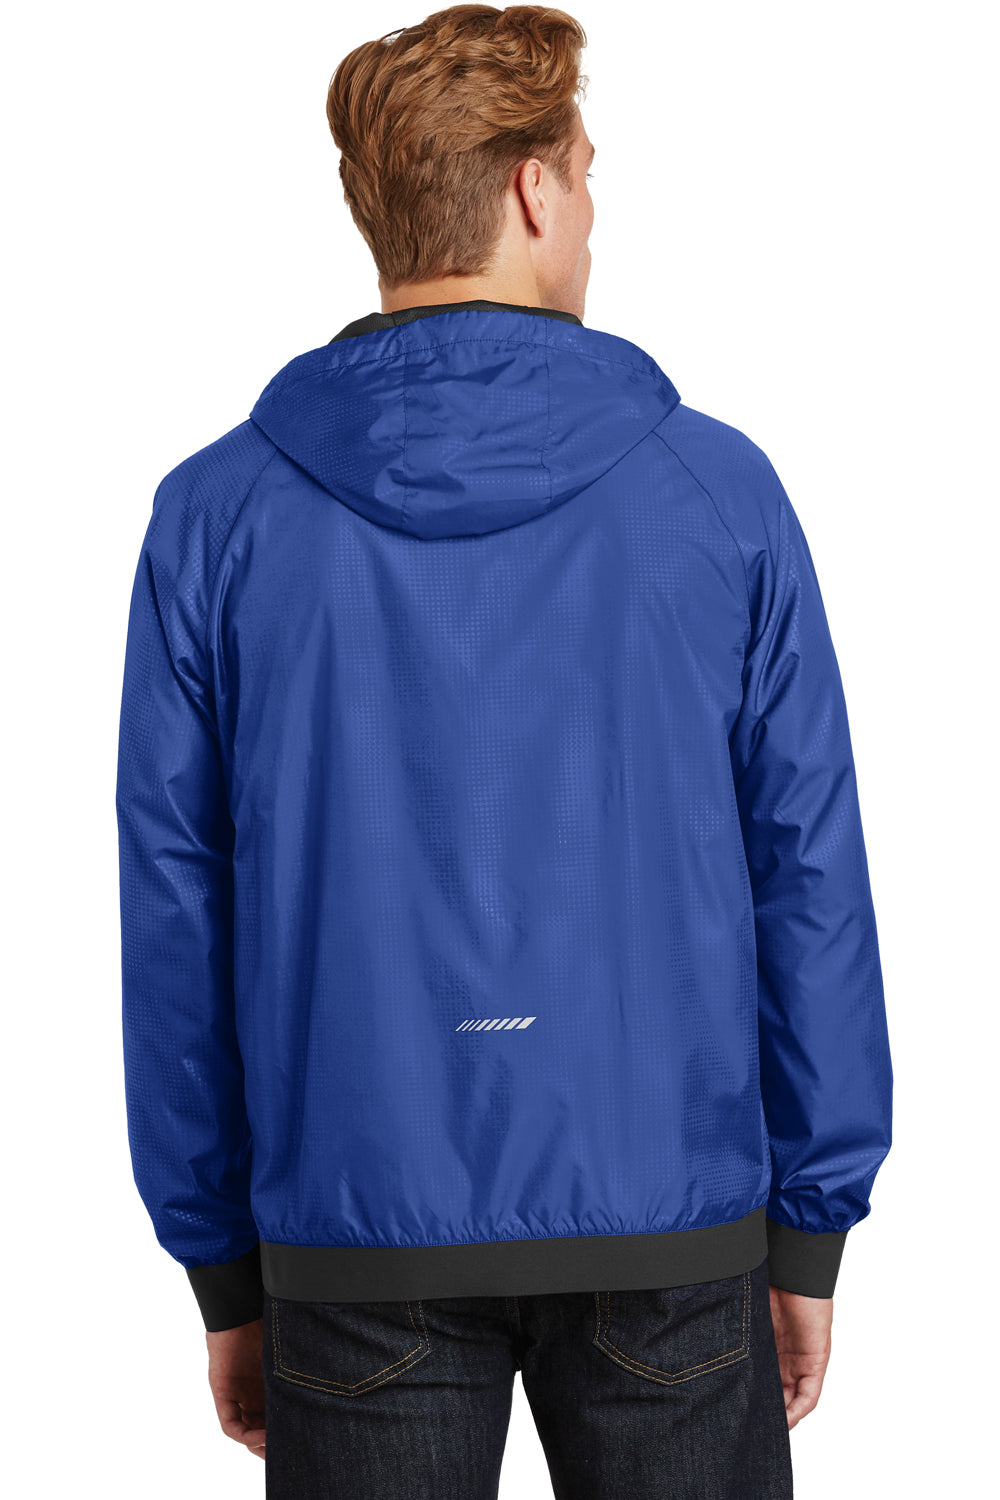 Sport-Tek JST53 Mens Wind & Water Resistant Full Zip Hooded Jacket Royal Blue Back